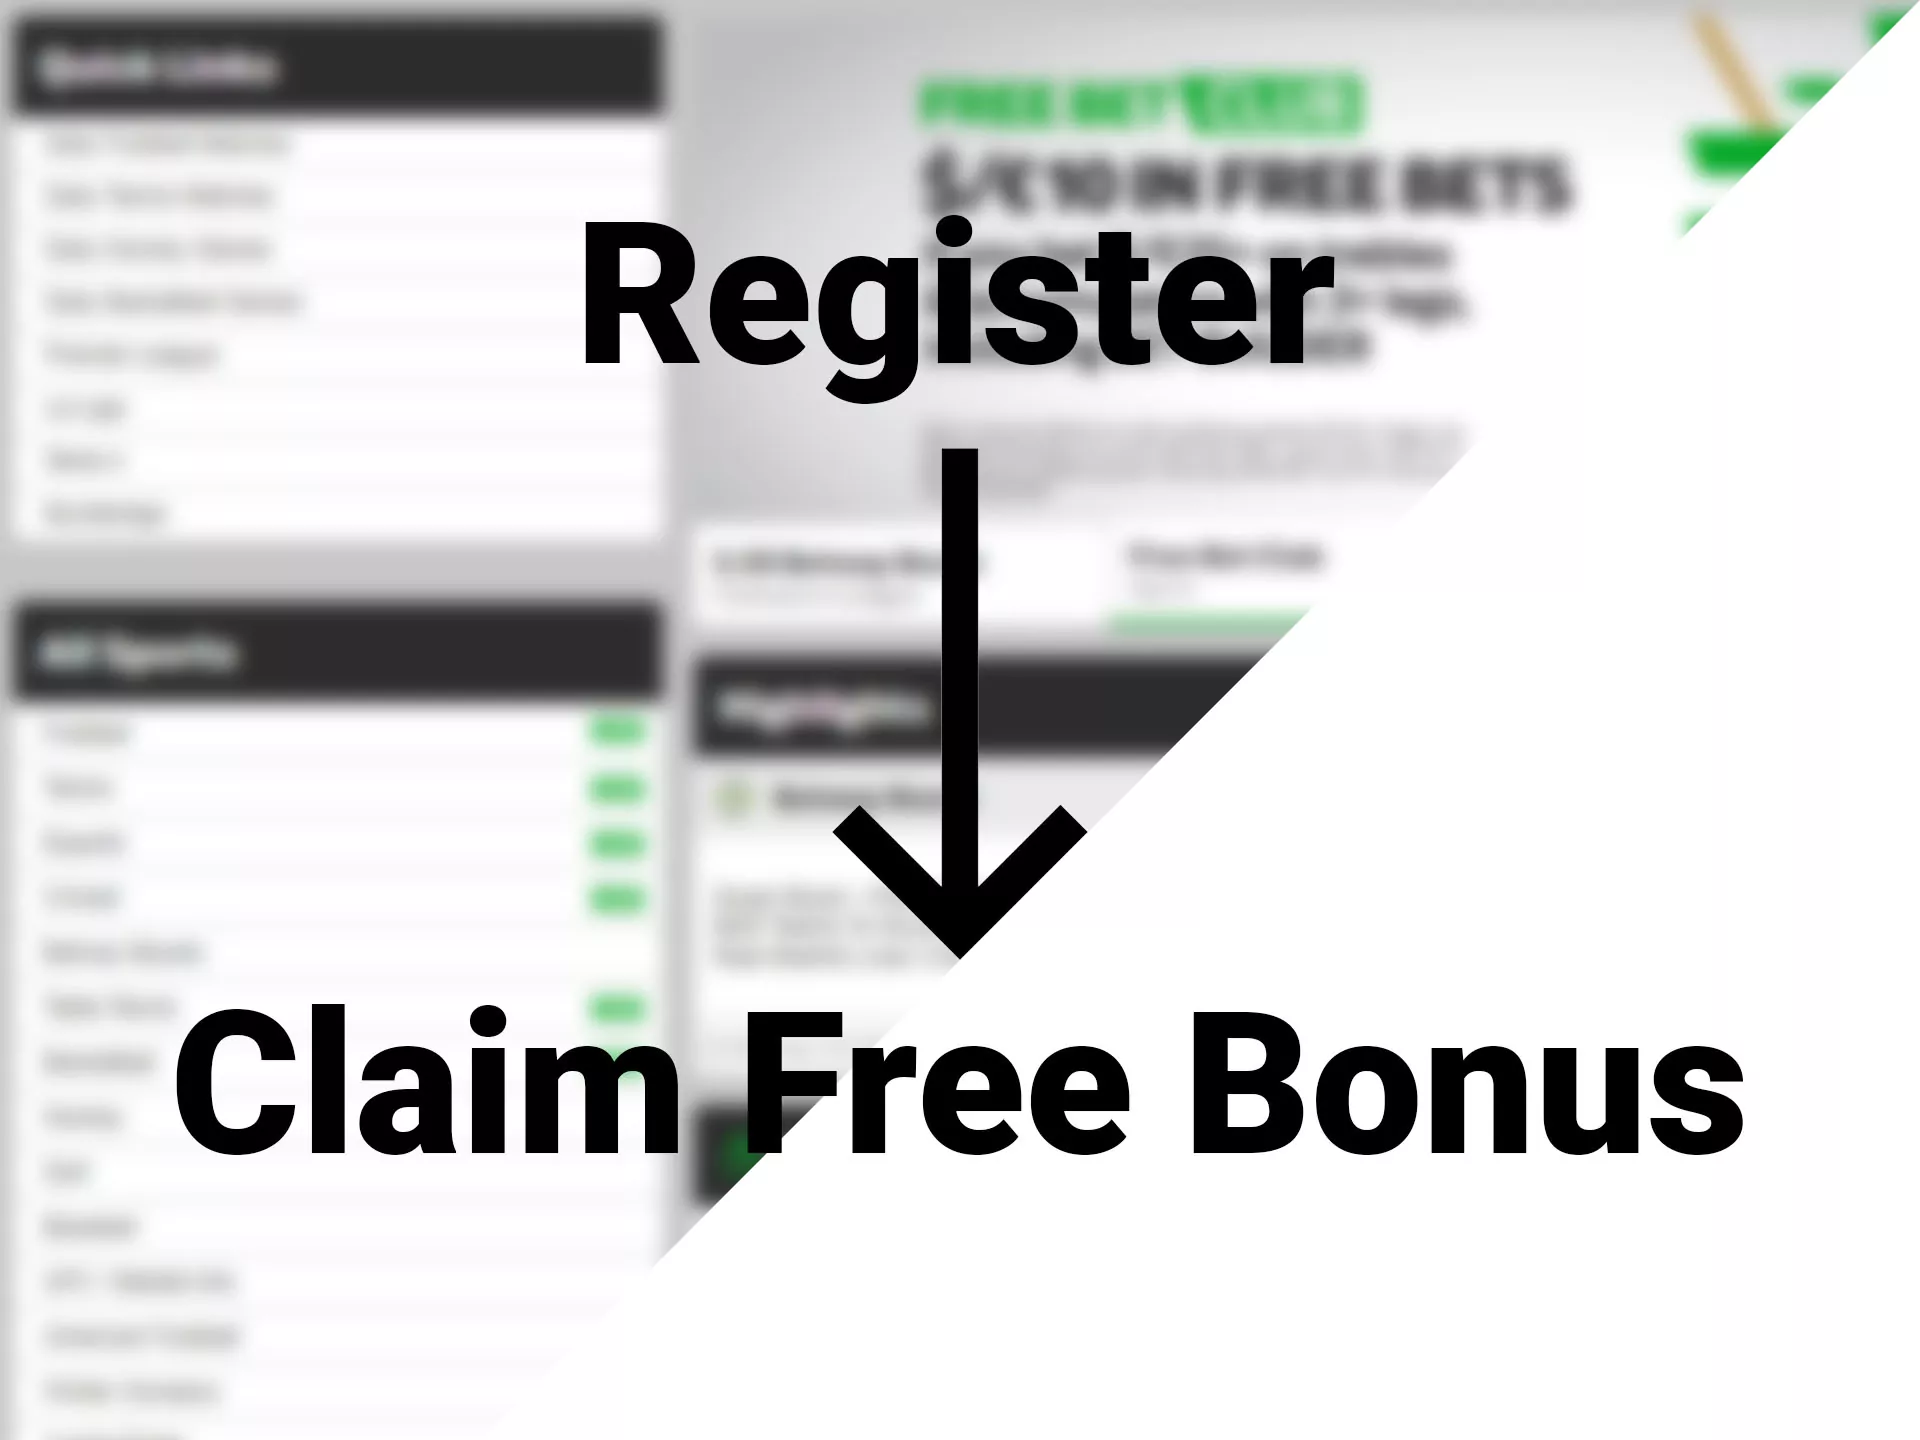 Register and claim free bonuses.